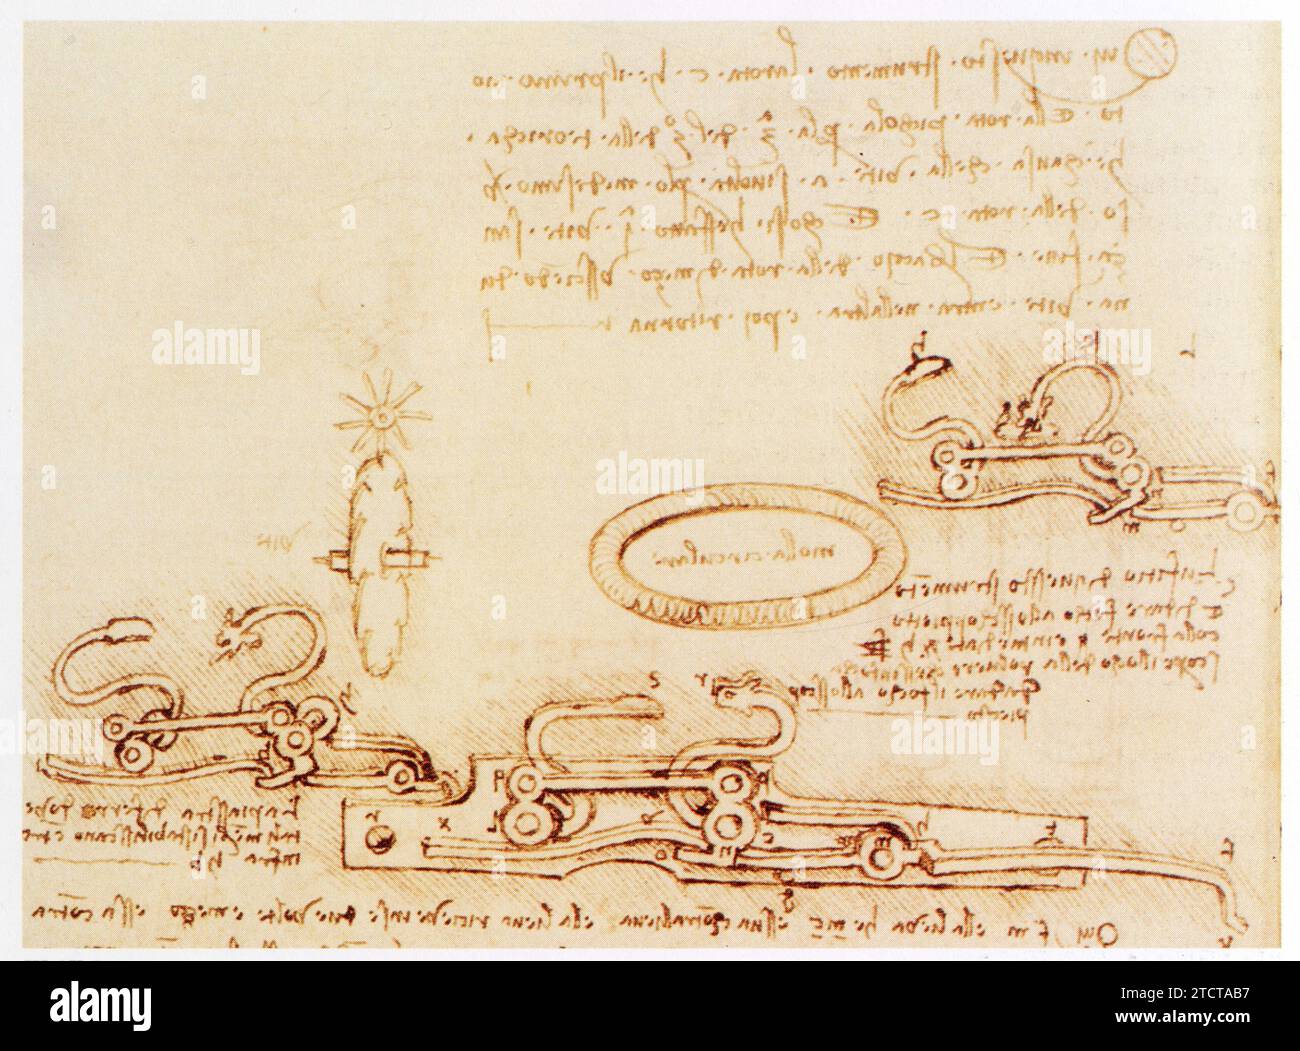 Leonardo da Vinci.1452-1519.Briquet à ressorts pour l'allumage d'une mèche d'arme à feu. Foto Stock